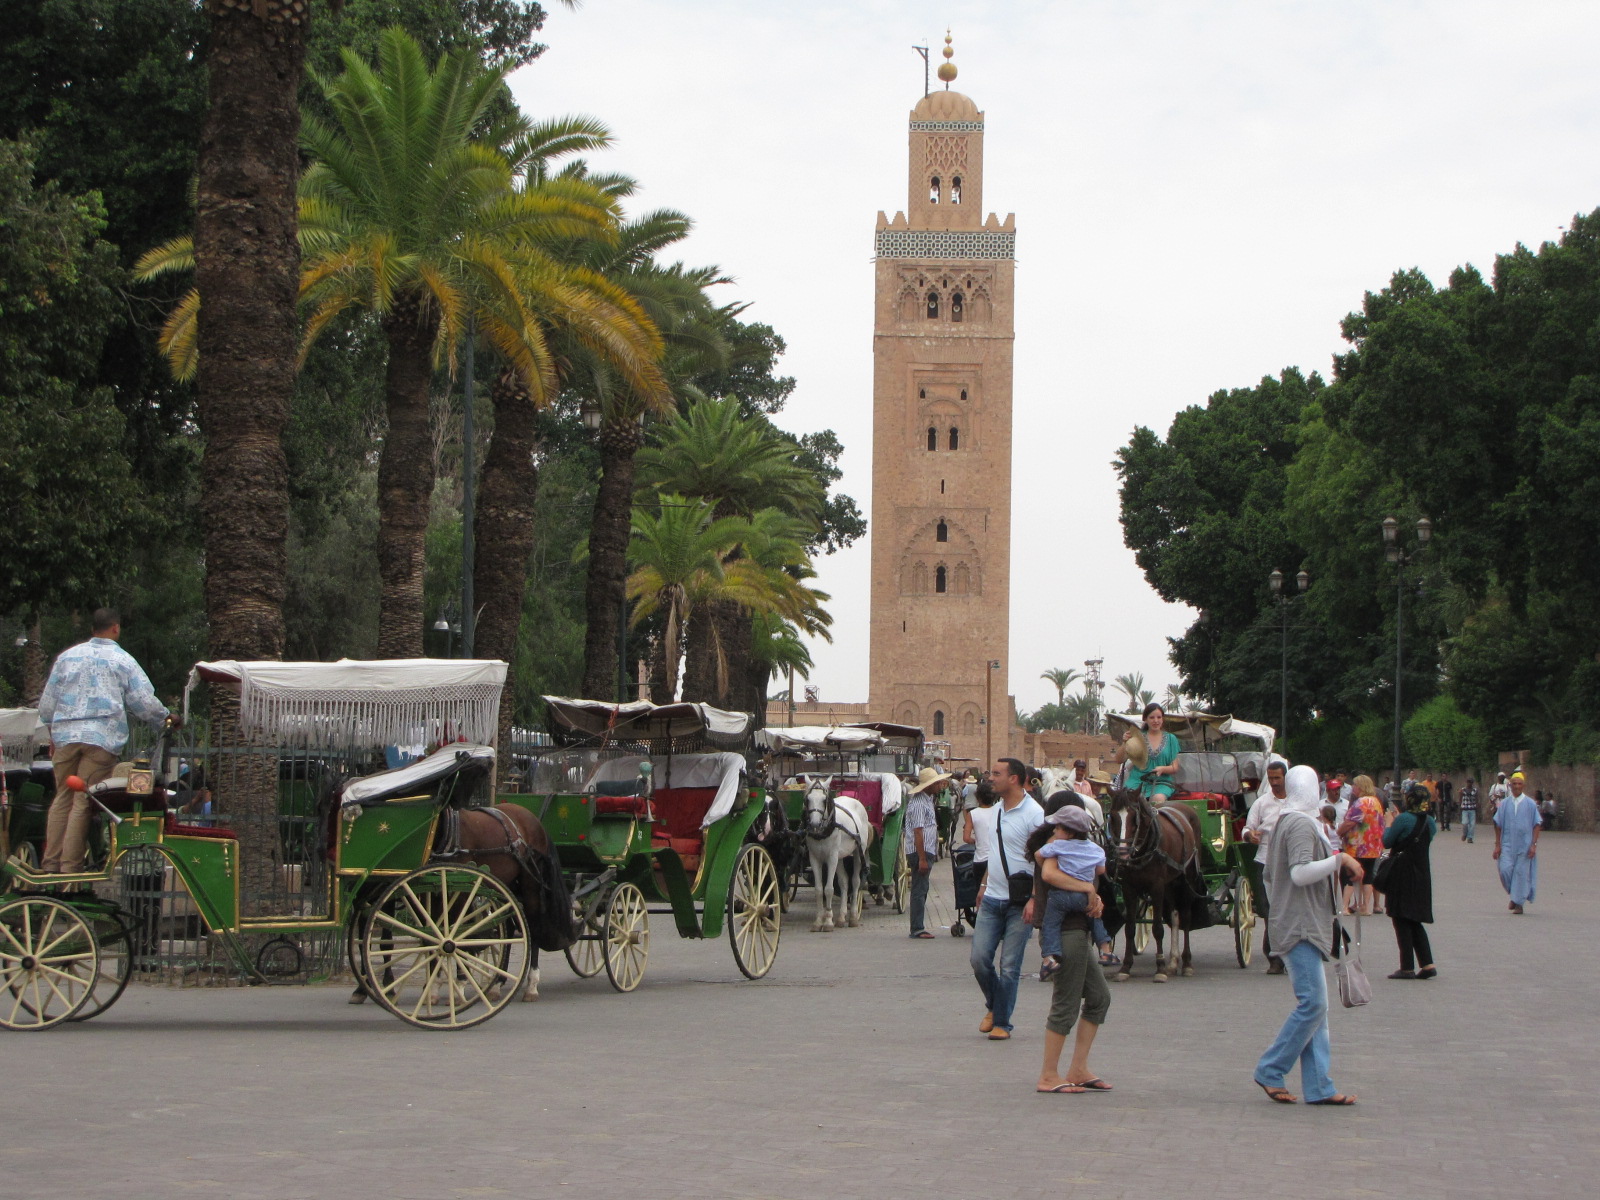 Marrakech Excurions, giro in carrozza trainata da cavalli a Marrakech